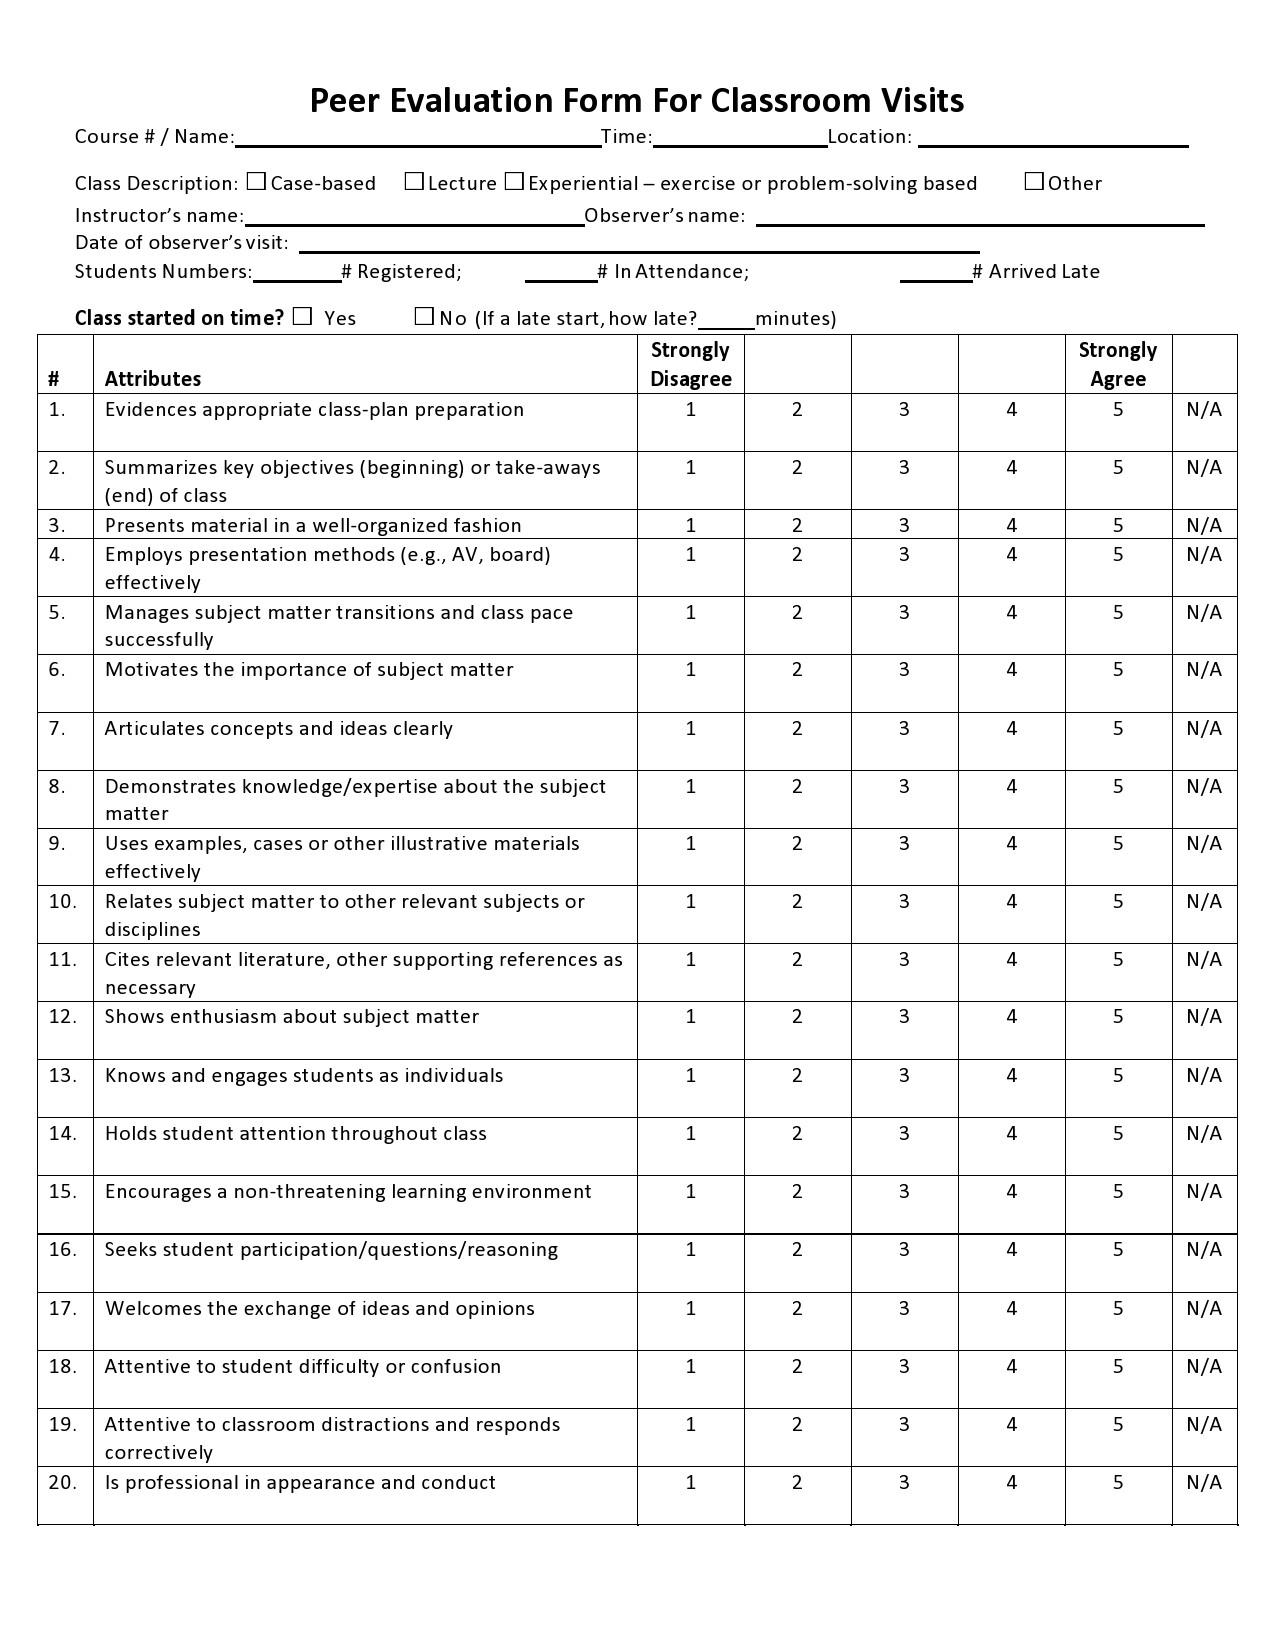 Free peer evaluation form 26